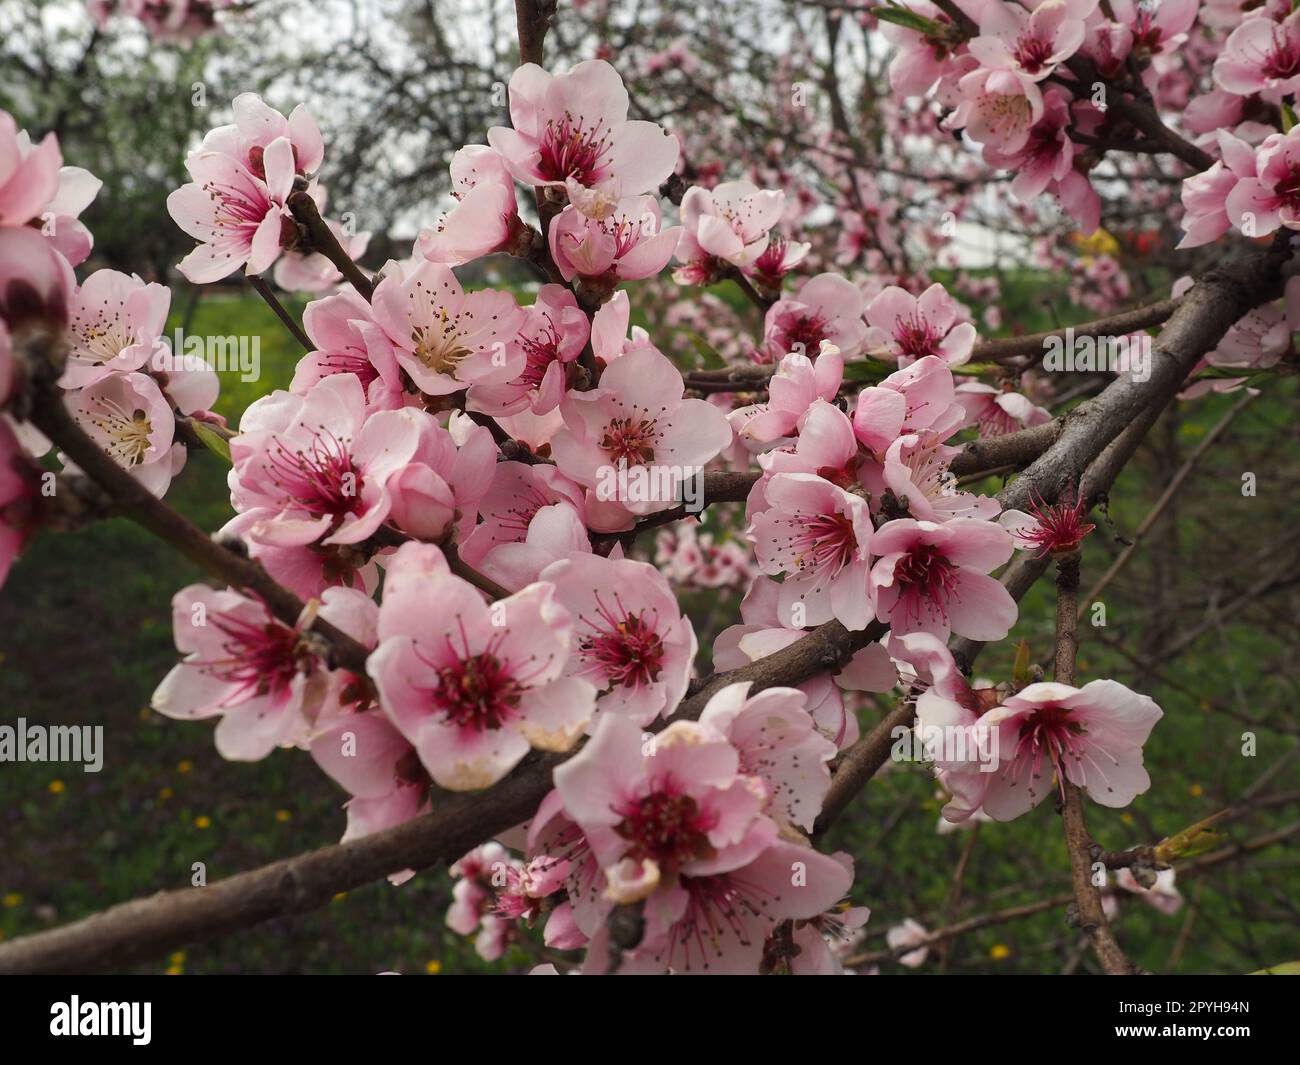 Branche d'abricot ou de pêche avec des fleurs en floraison printanière. Une abeille bourdonnante profite du beau paysage rose. Fleurs printanières violettes roses Banque D'Images